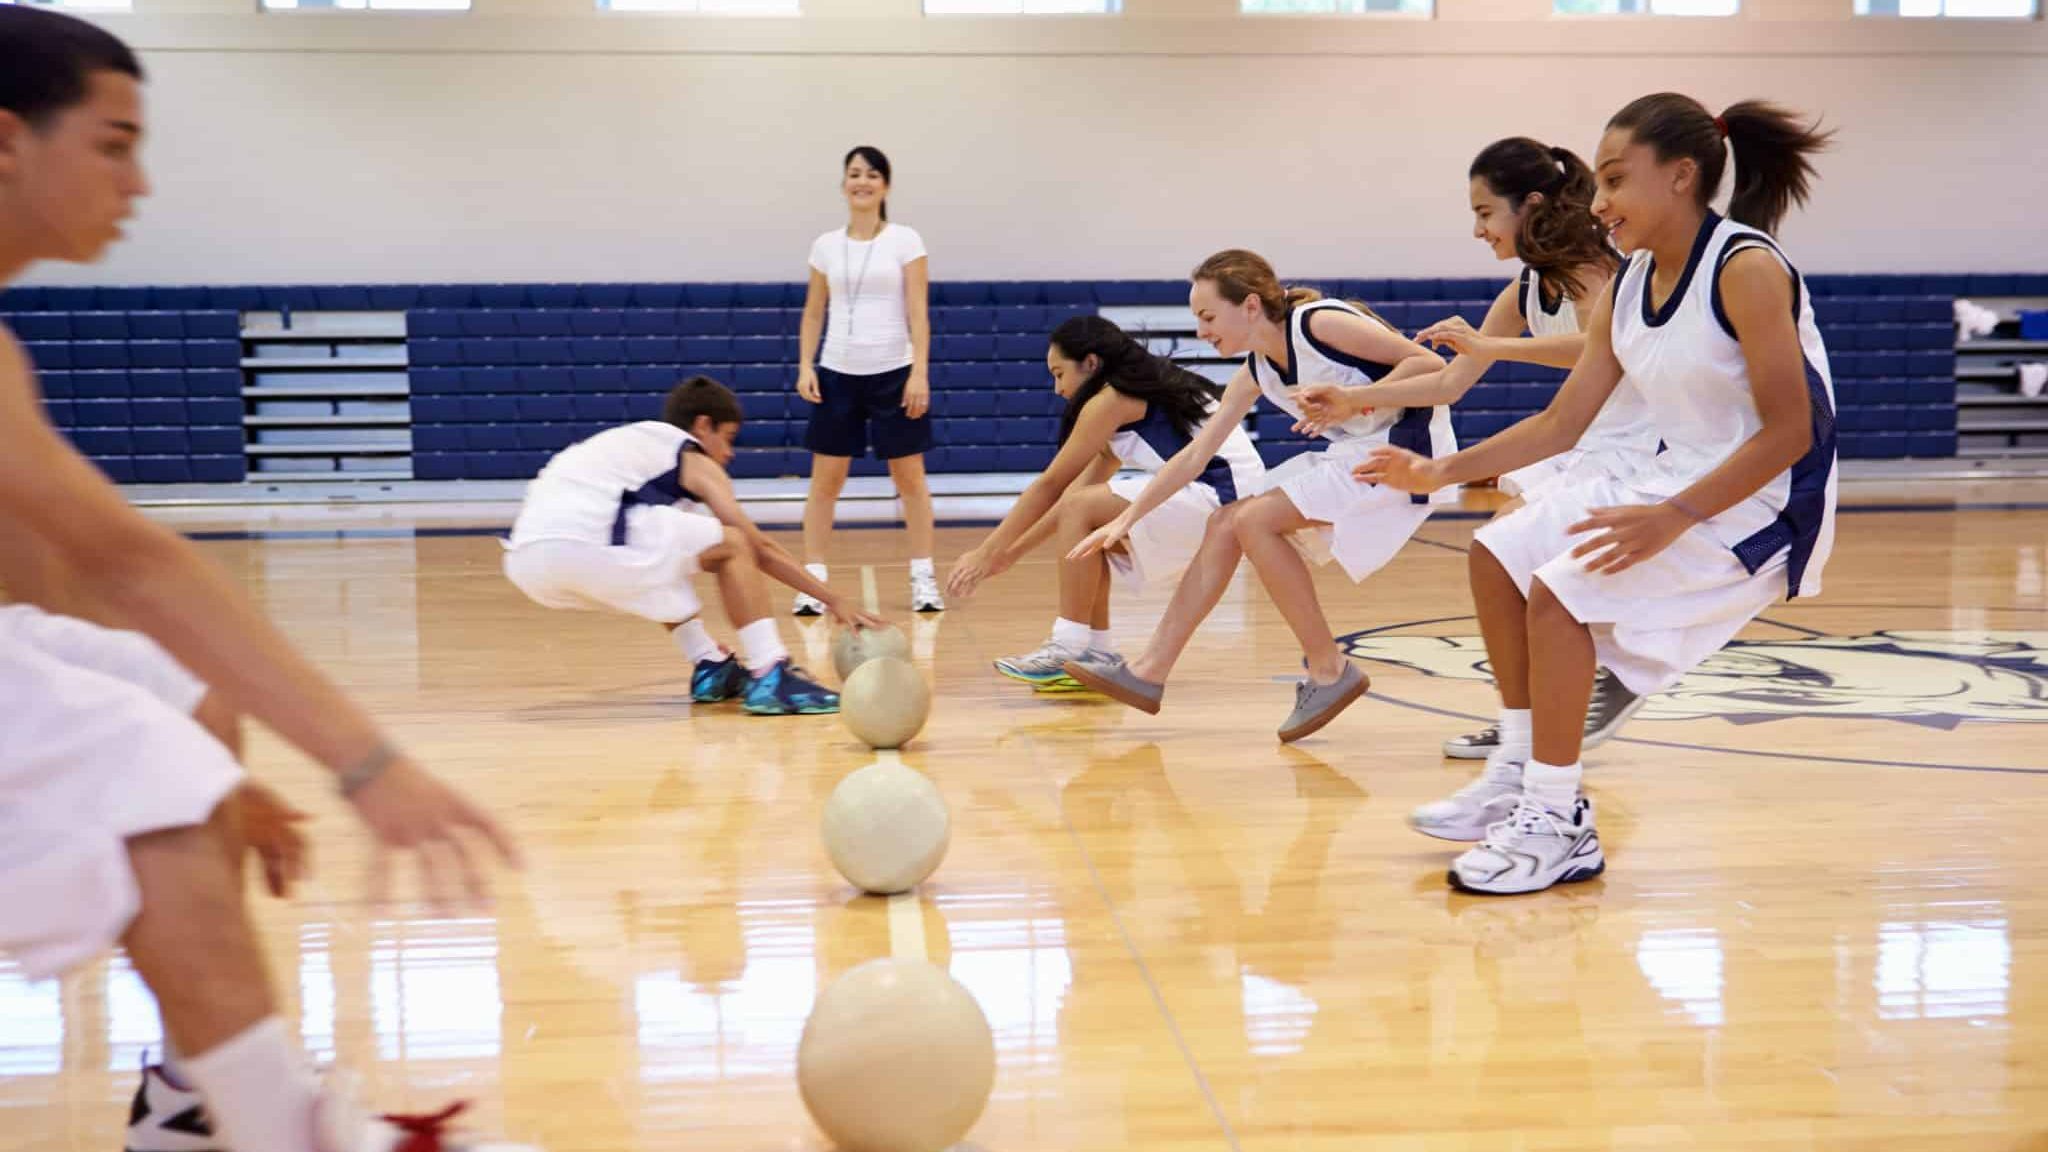 Le dodgeball, un sport collectif et mixte